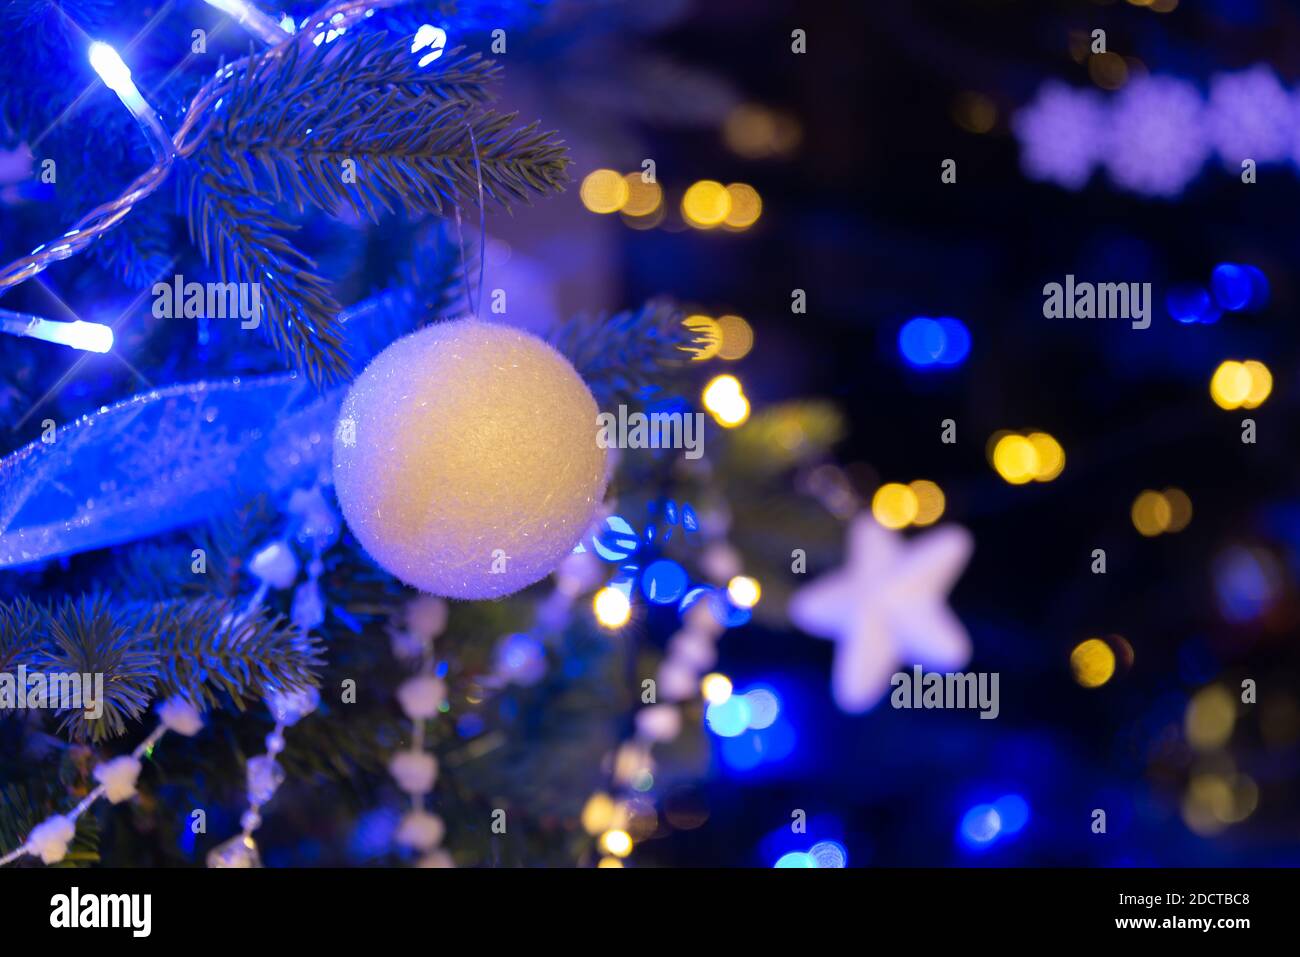 Pallina bianca appesa su un albero di Natale, ornamenti di Natale di notte, luci di vacanza blu e oro Foto Stock